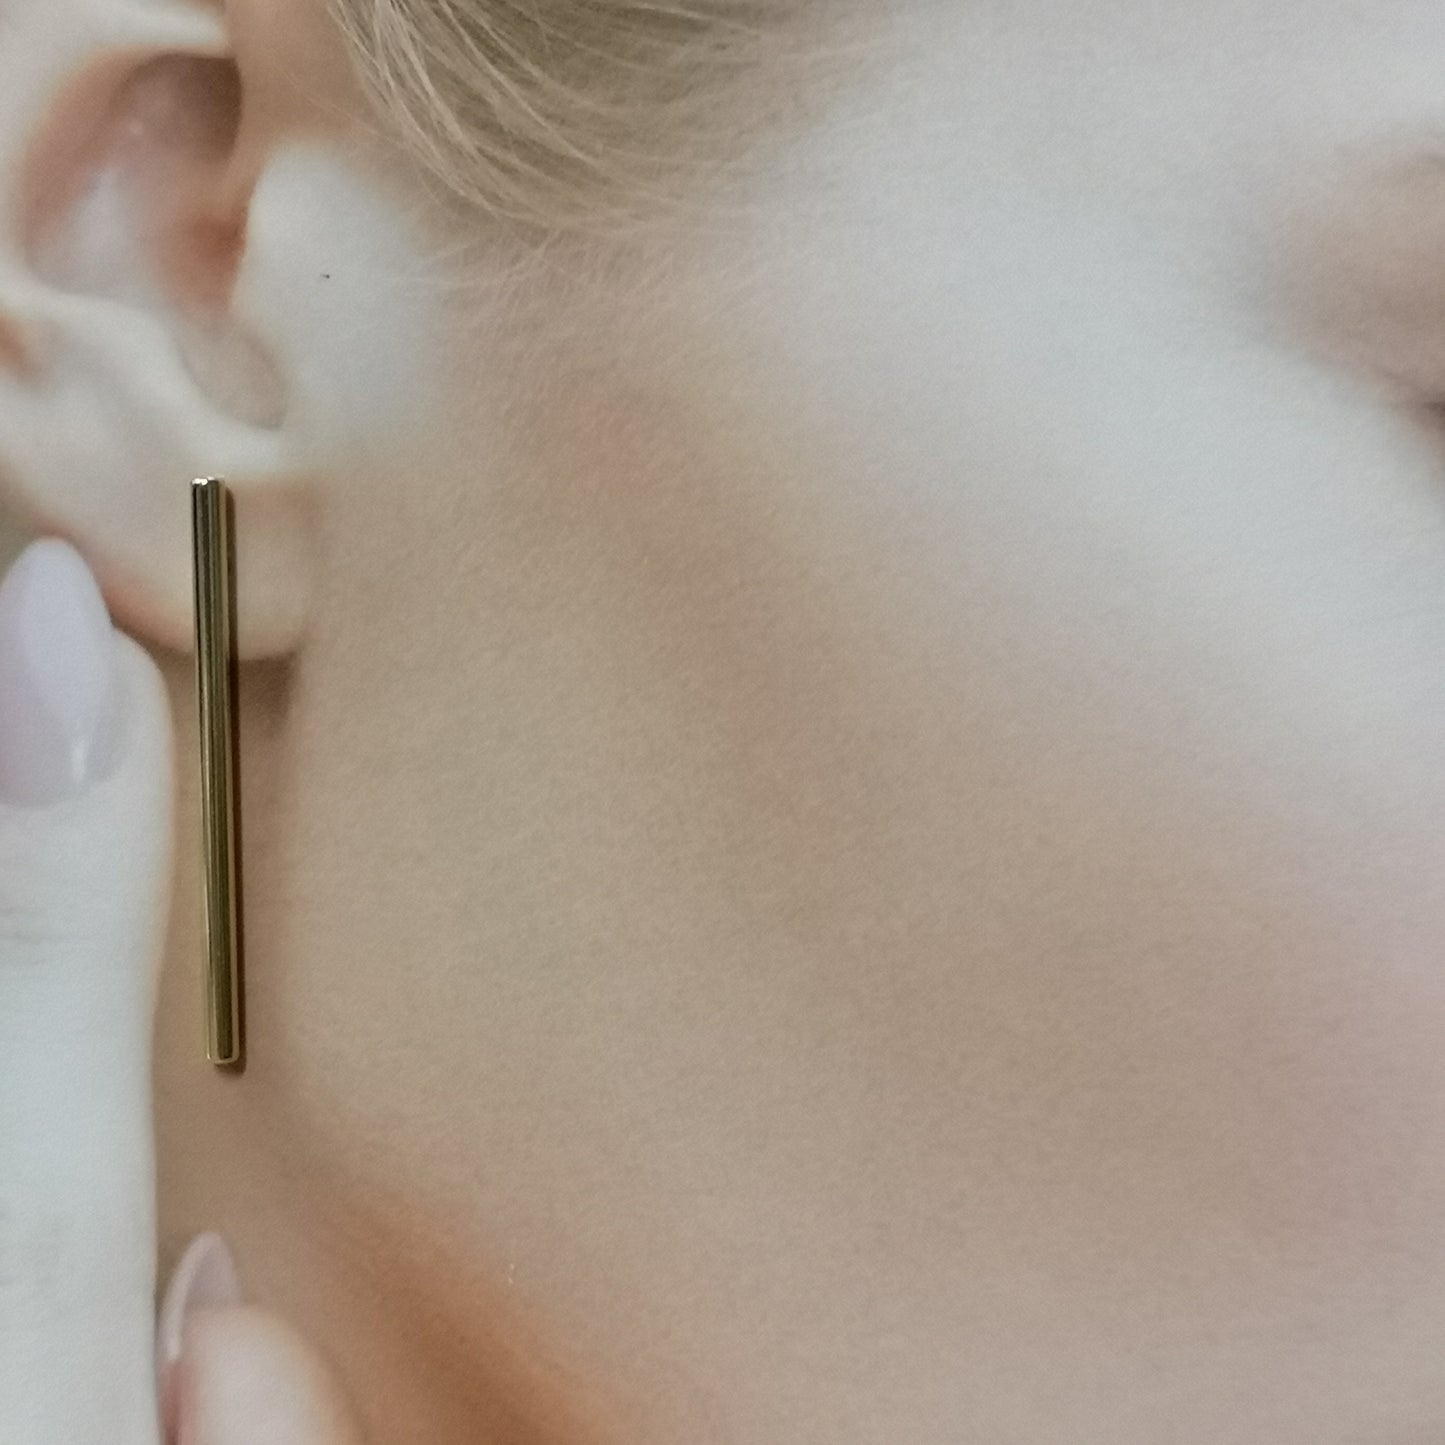 Pinnen, 35 mm stick earrings